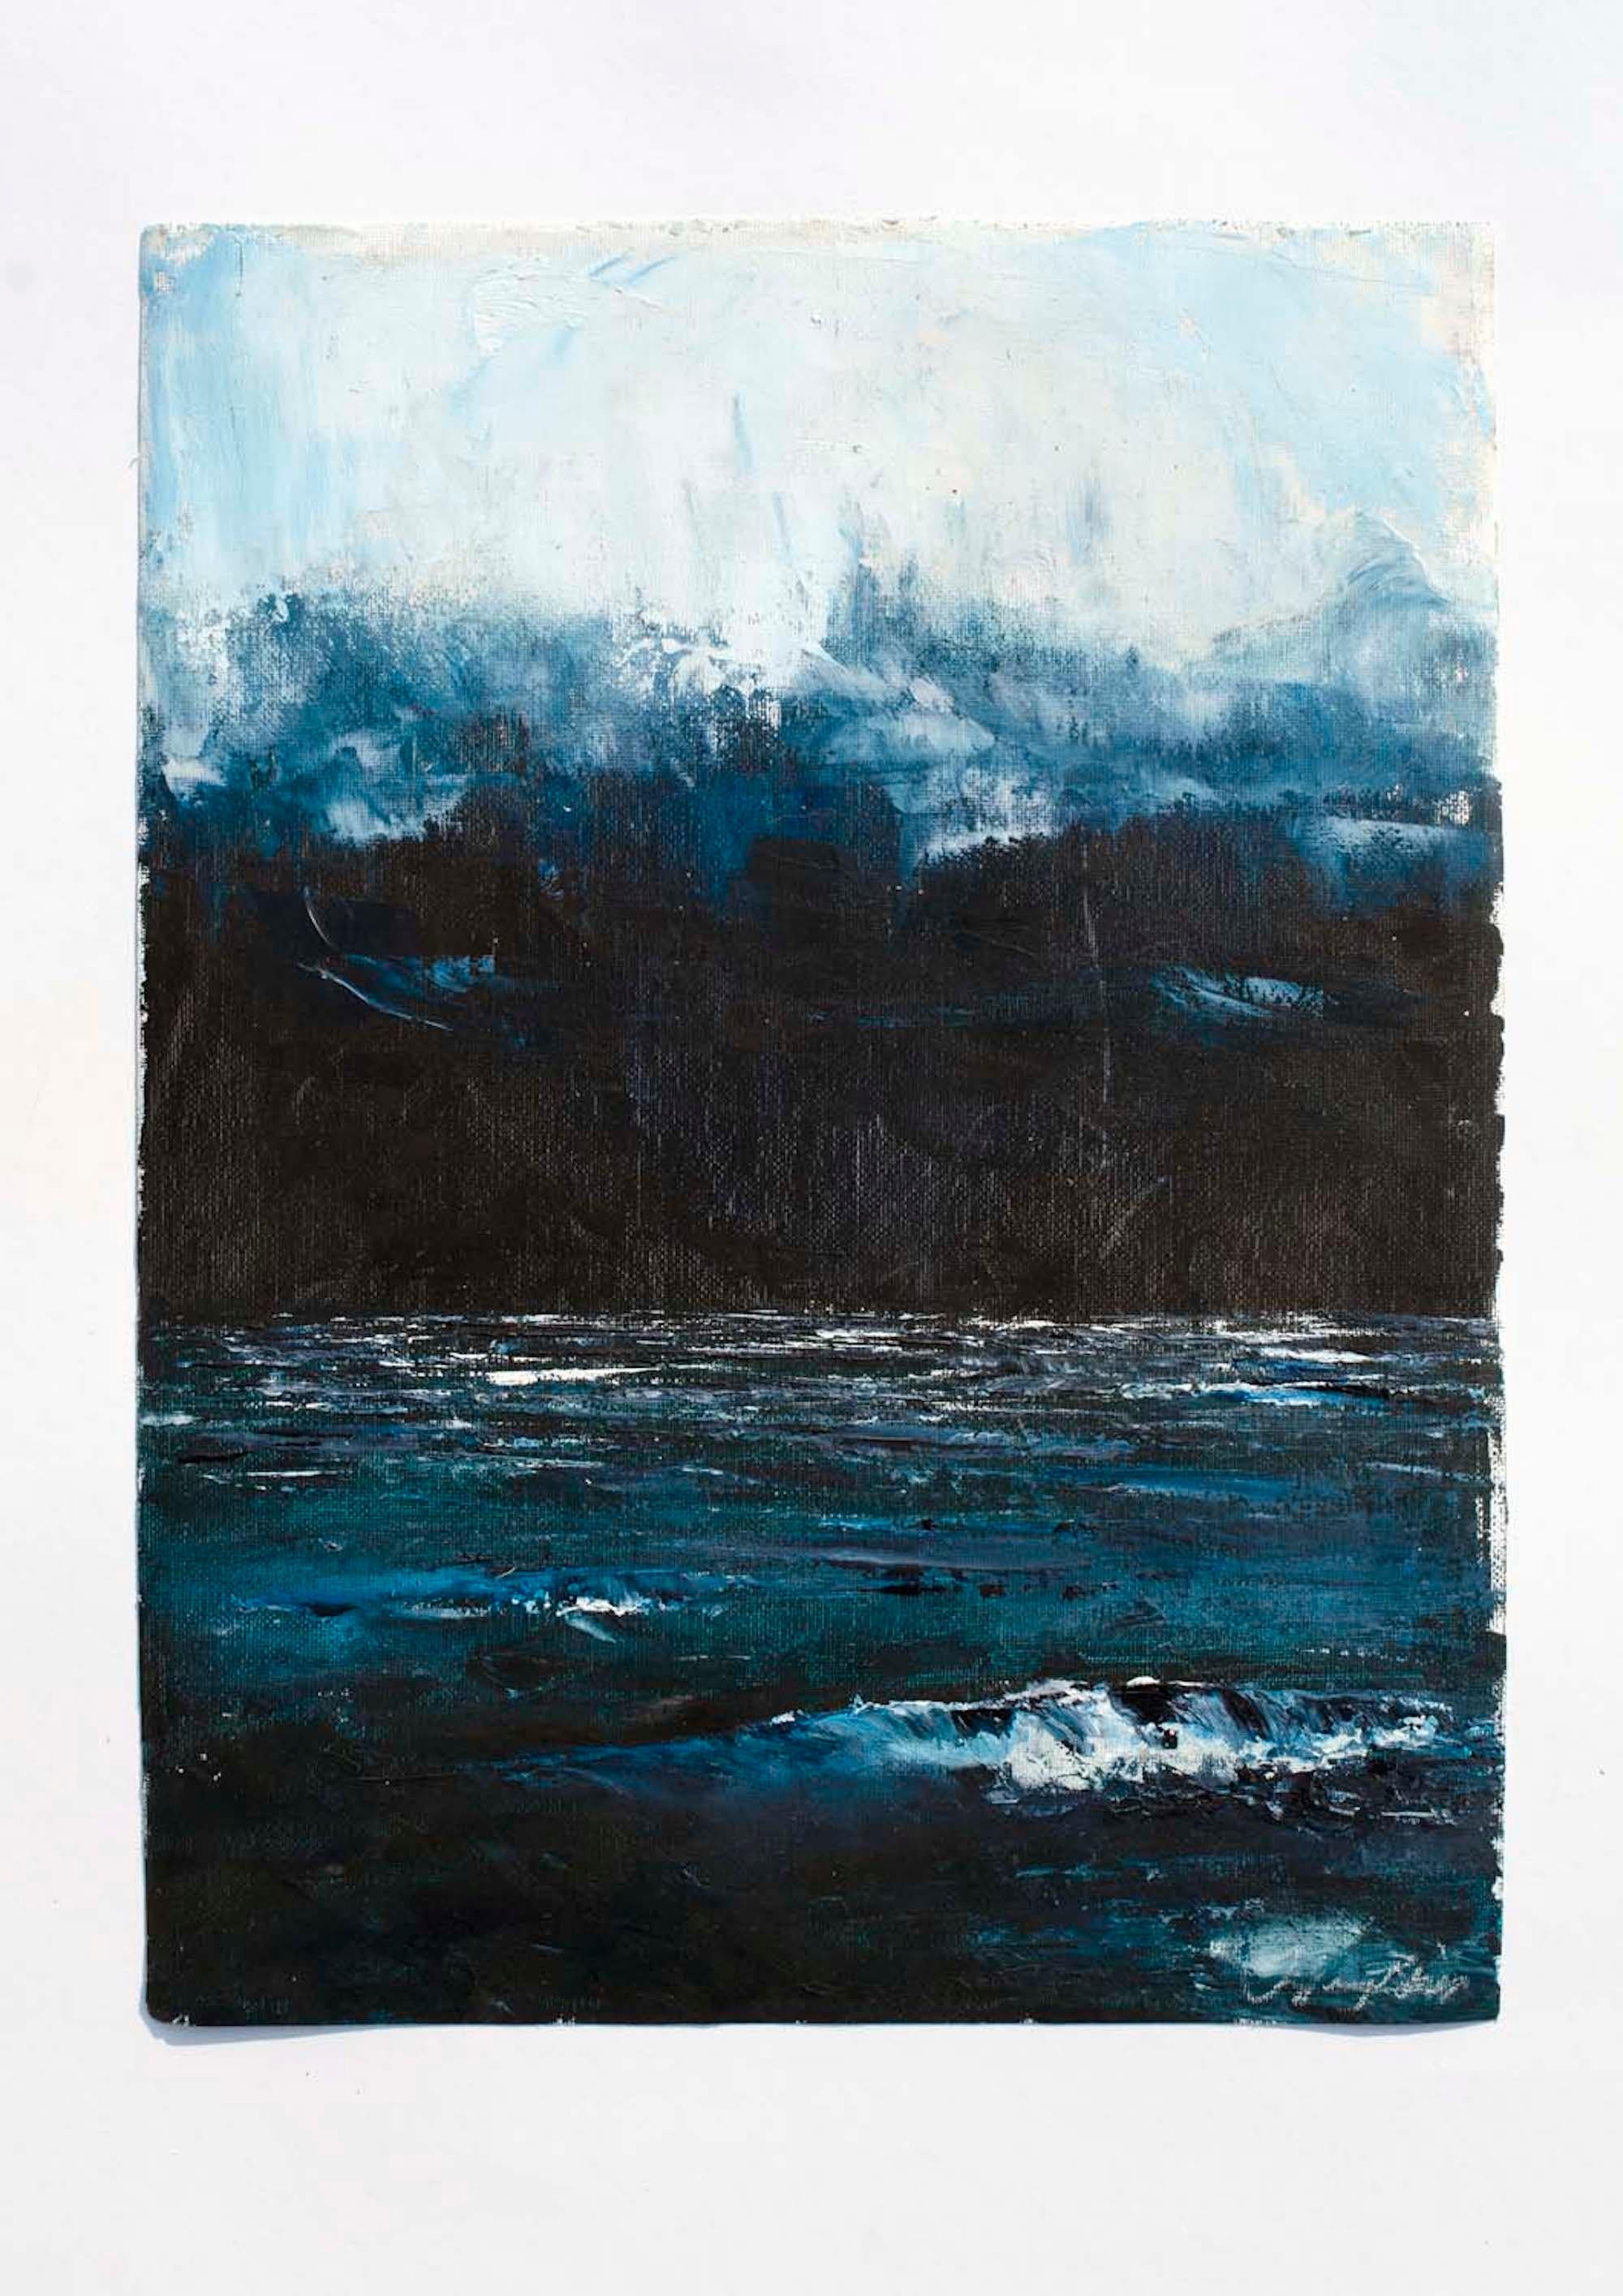 <p>Kommentare des Künstlers<br>Die Künstlerin Tiffany Blaise fängt ein ruhiges Meer unter einem bedeckten Nachthimmel ein. In der Abenddämmerung legt sich ein dicker Nebel über die Atmosphäre. Das ruhige Wasser leuchtet in einem dunklen Indigoton.